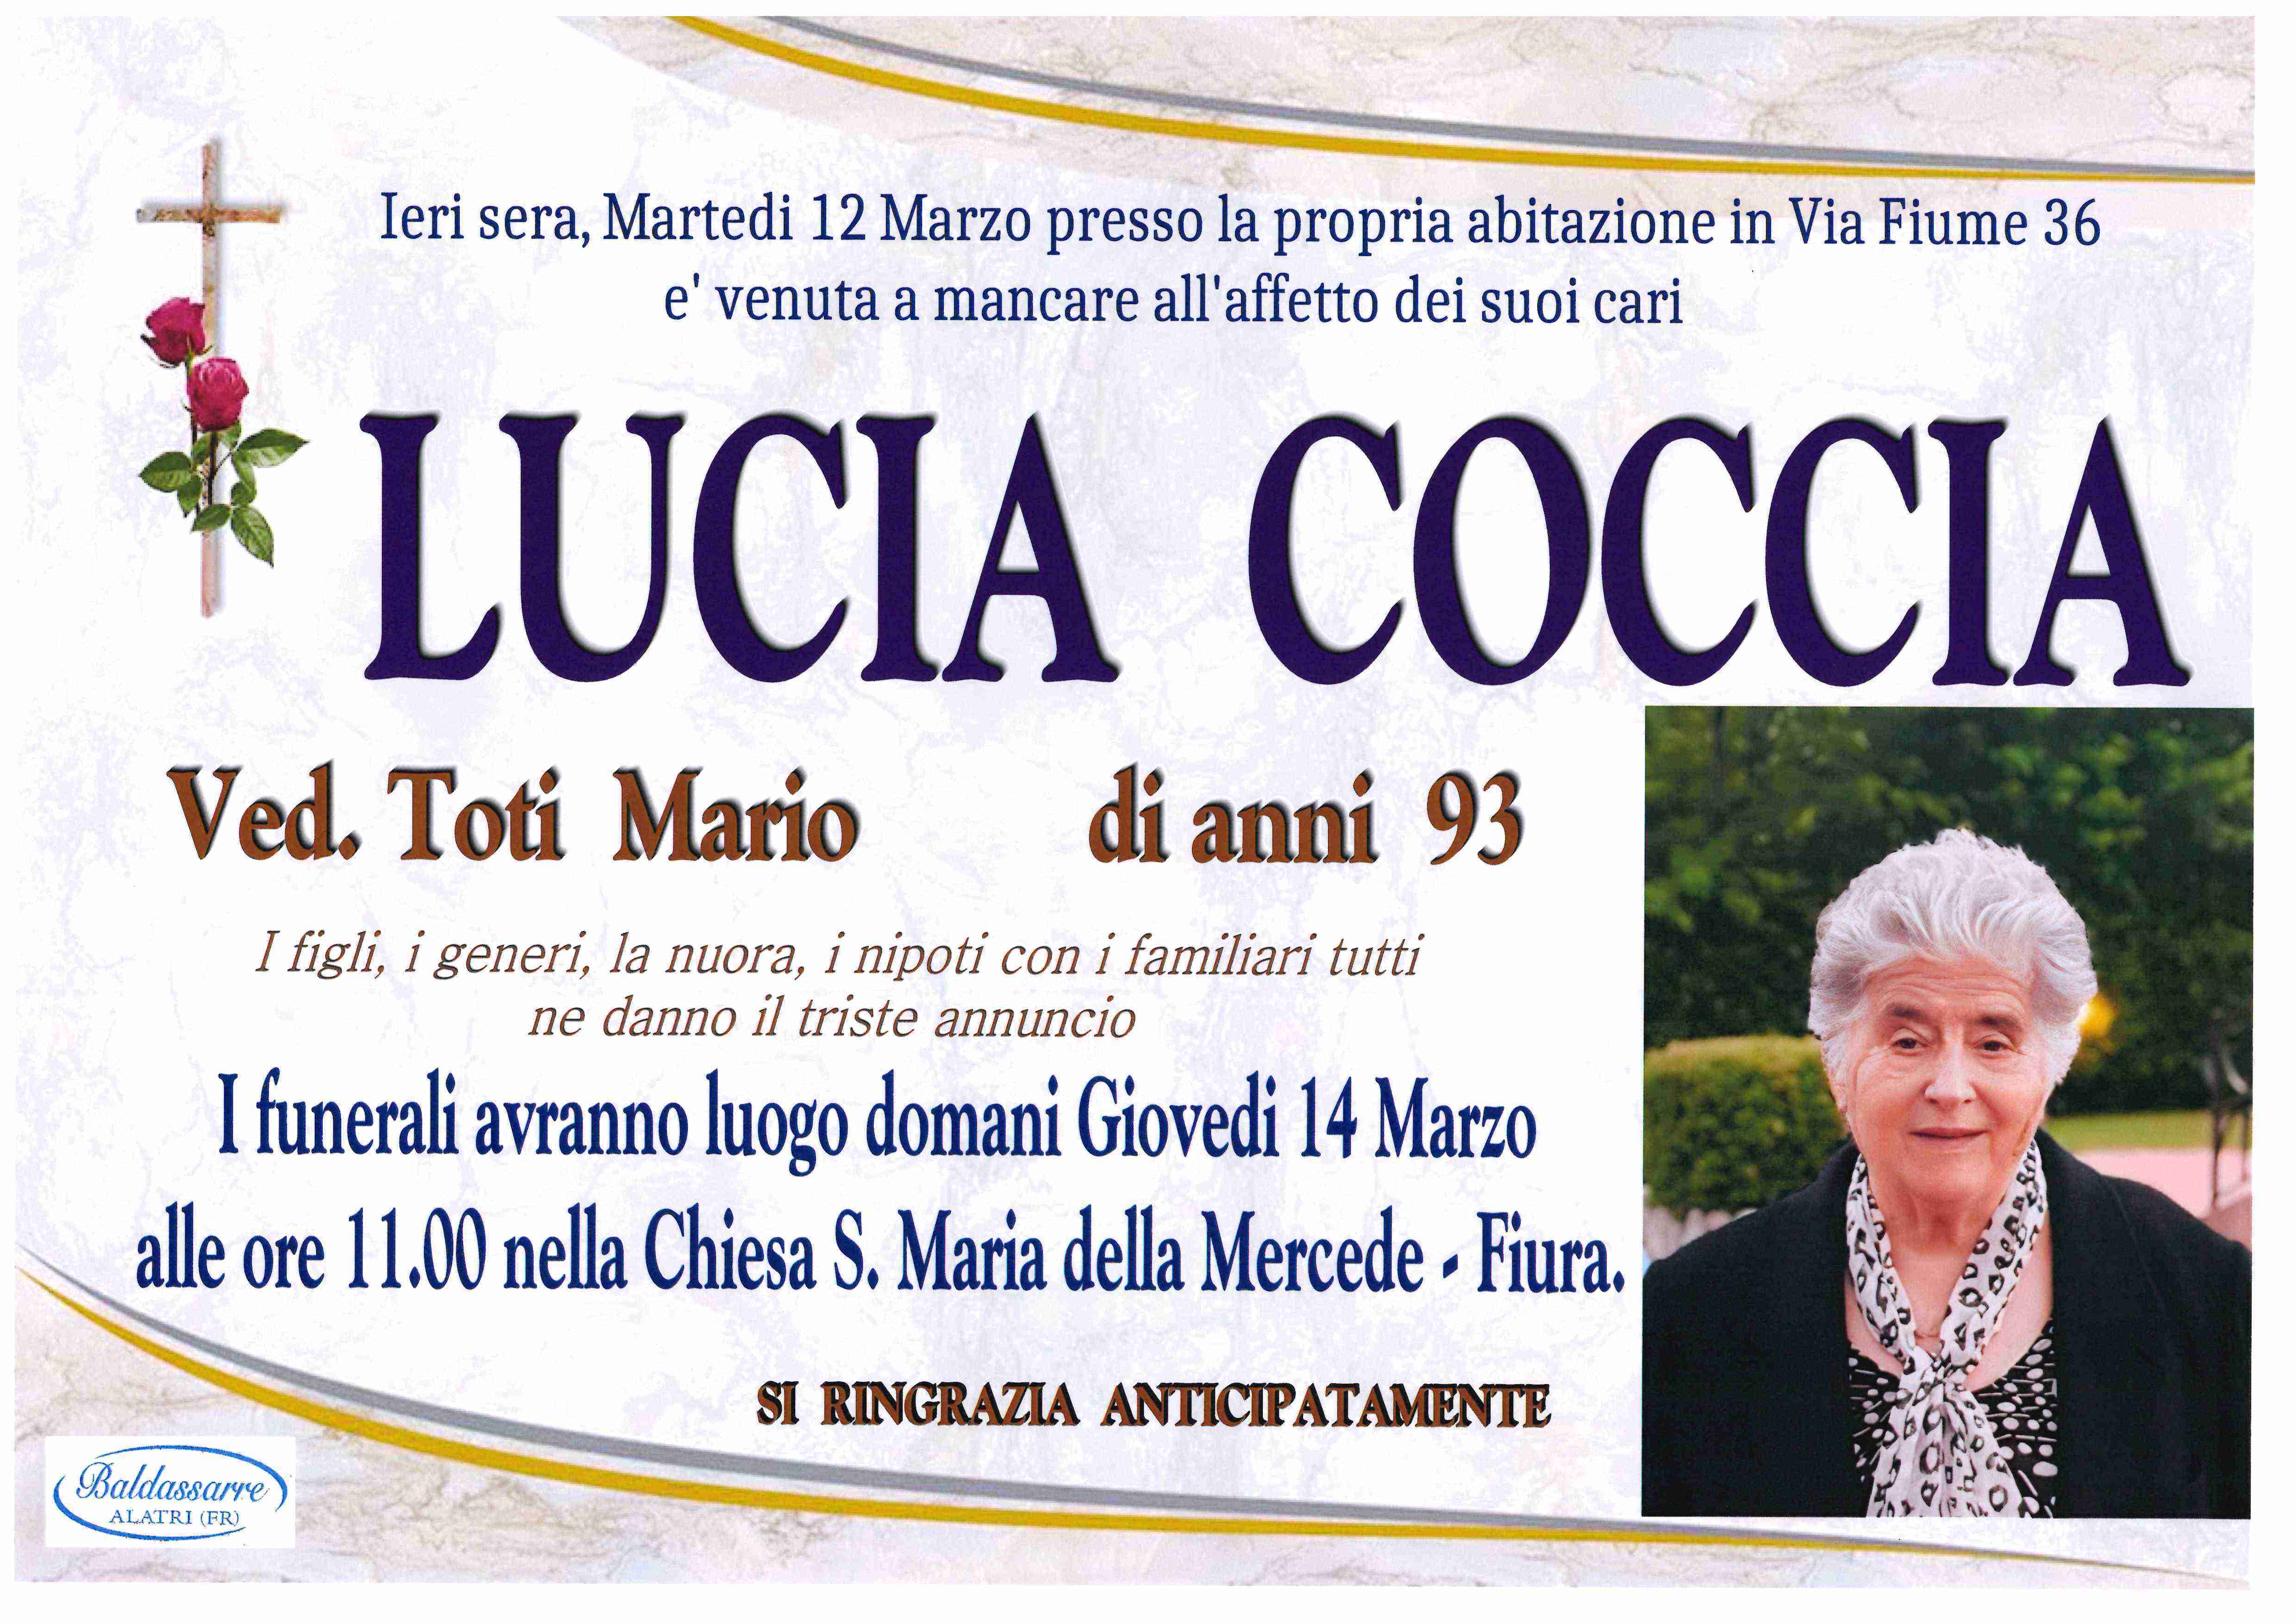 Lucia Coccia